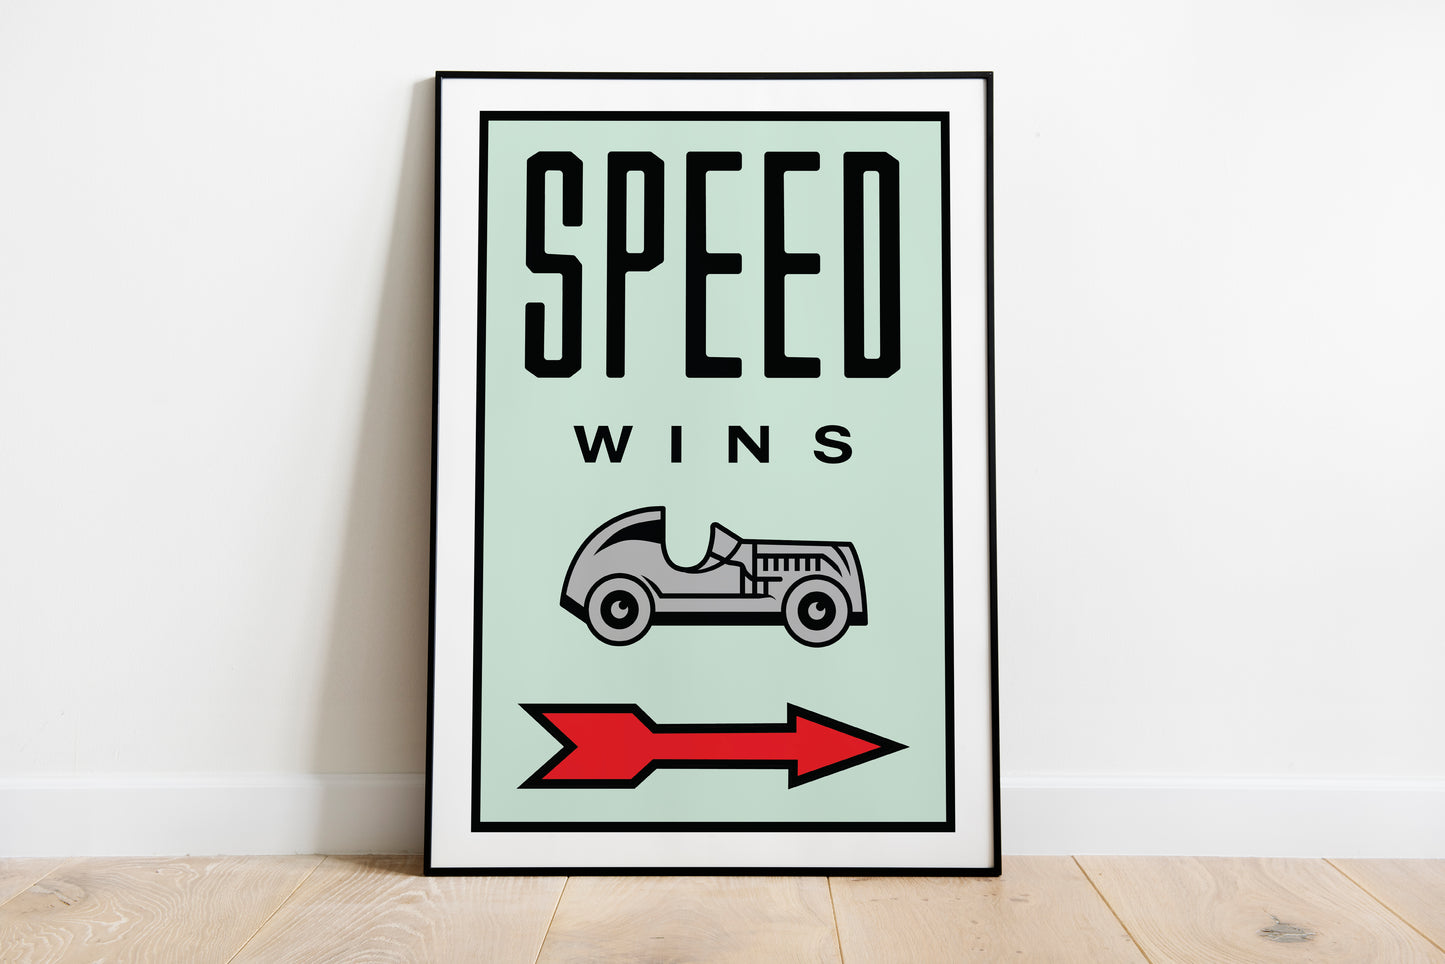 Speed Wins